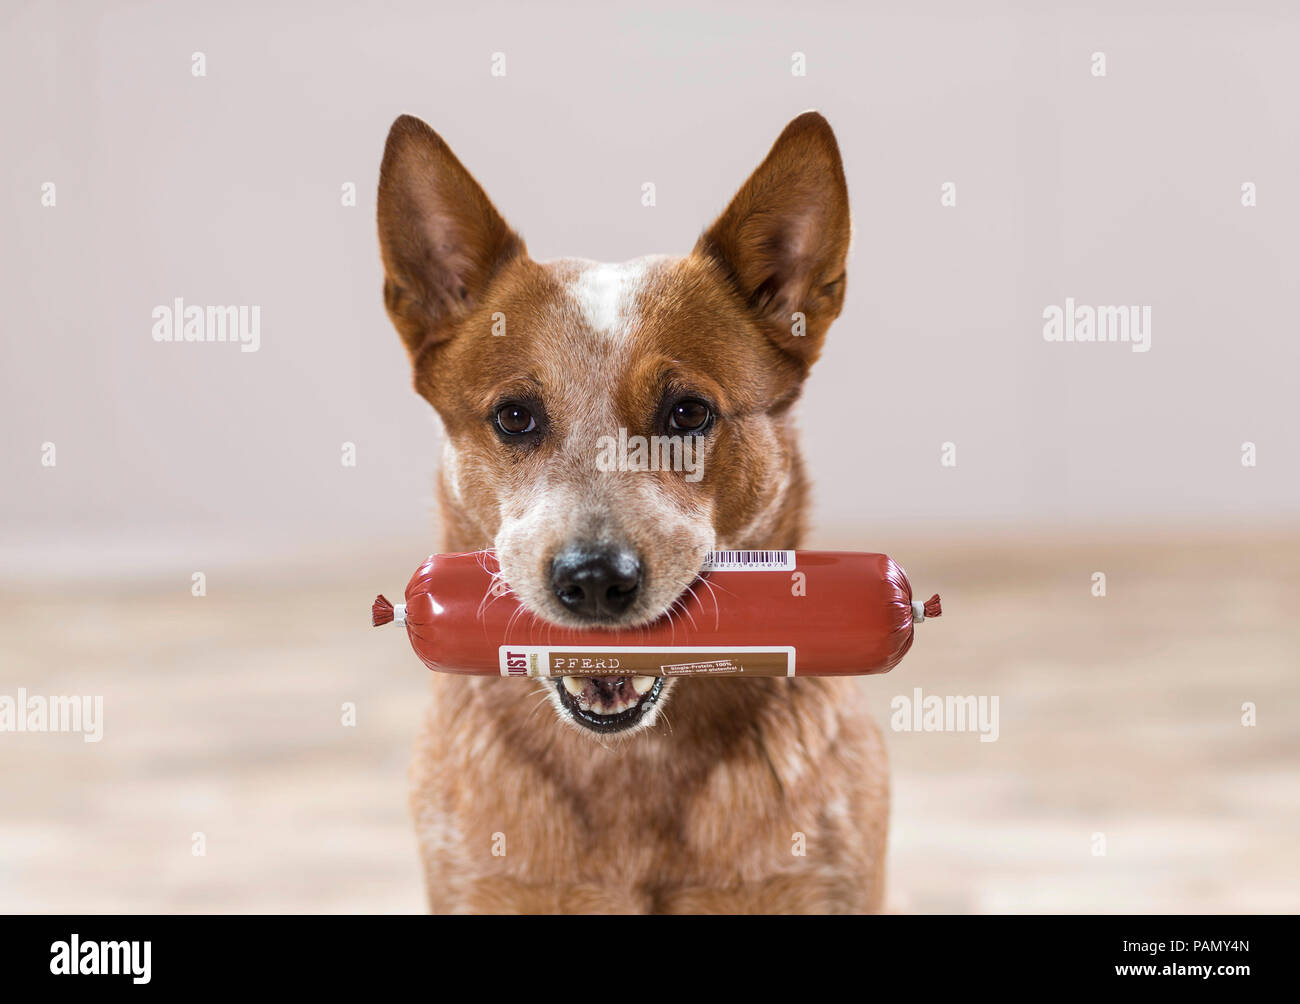 Perro de ganado australiano con salchicha cruda para perros en la boca. Alemania Foto de stock